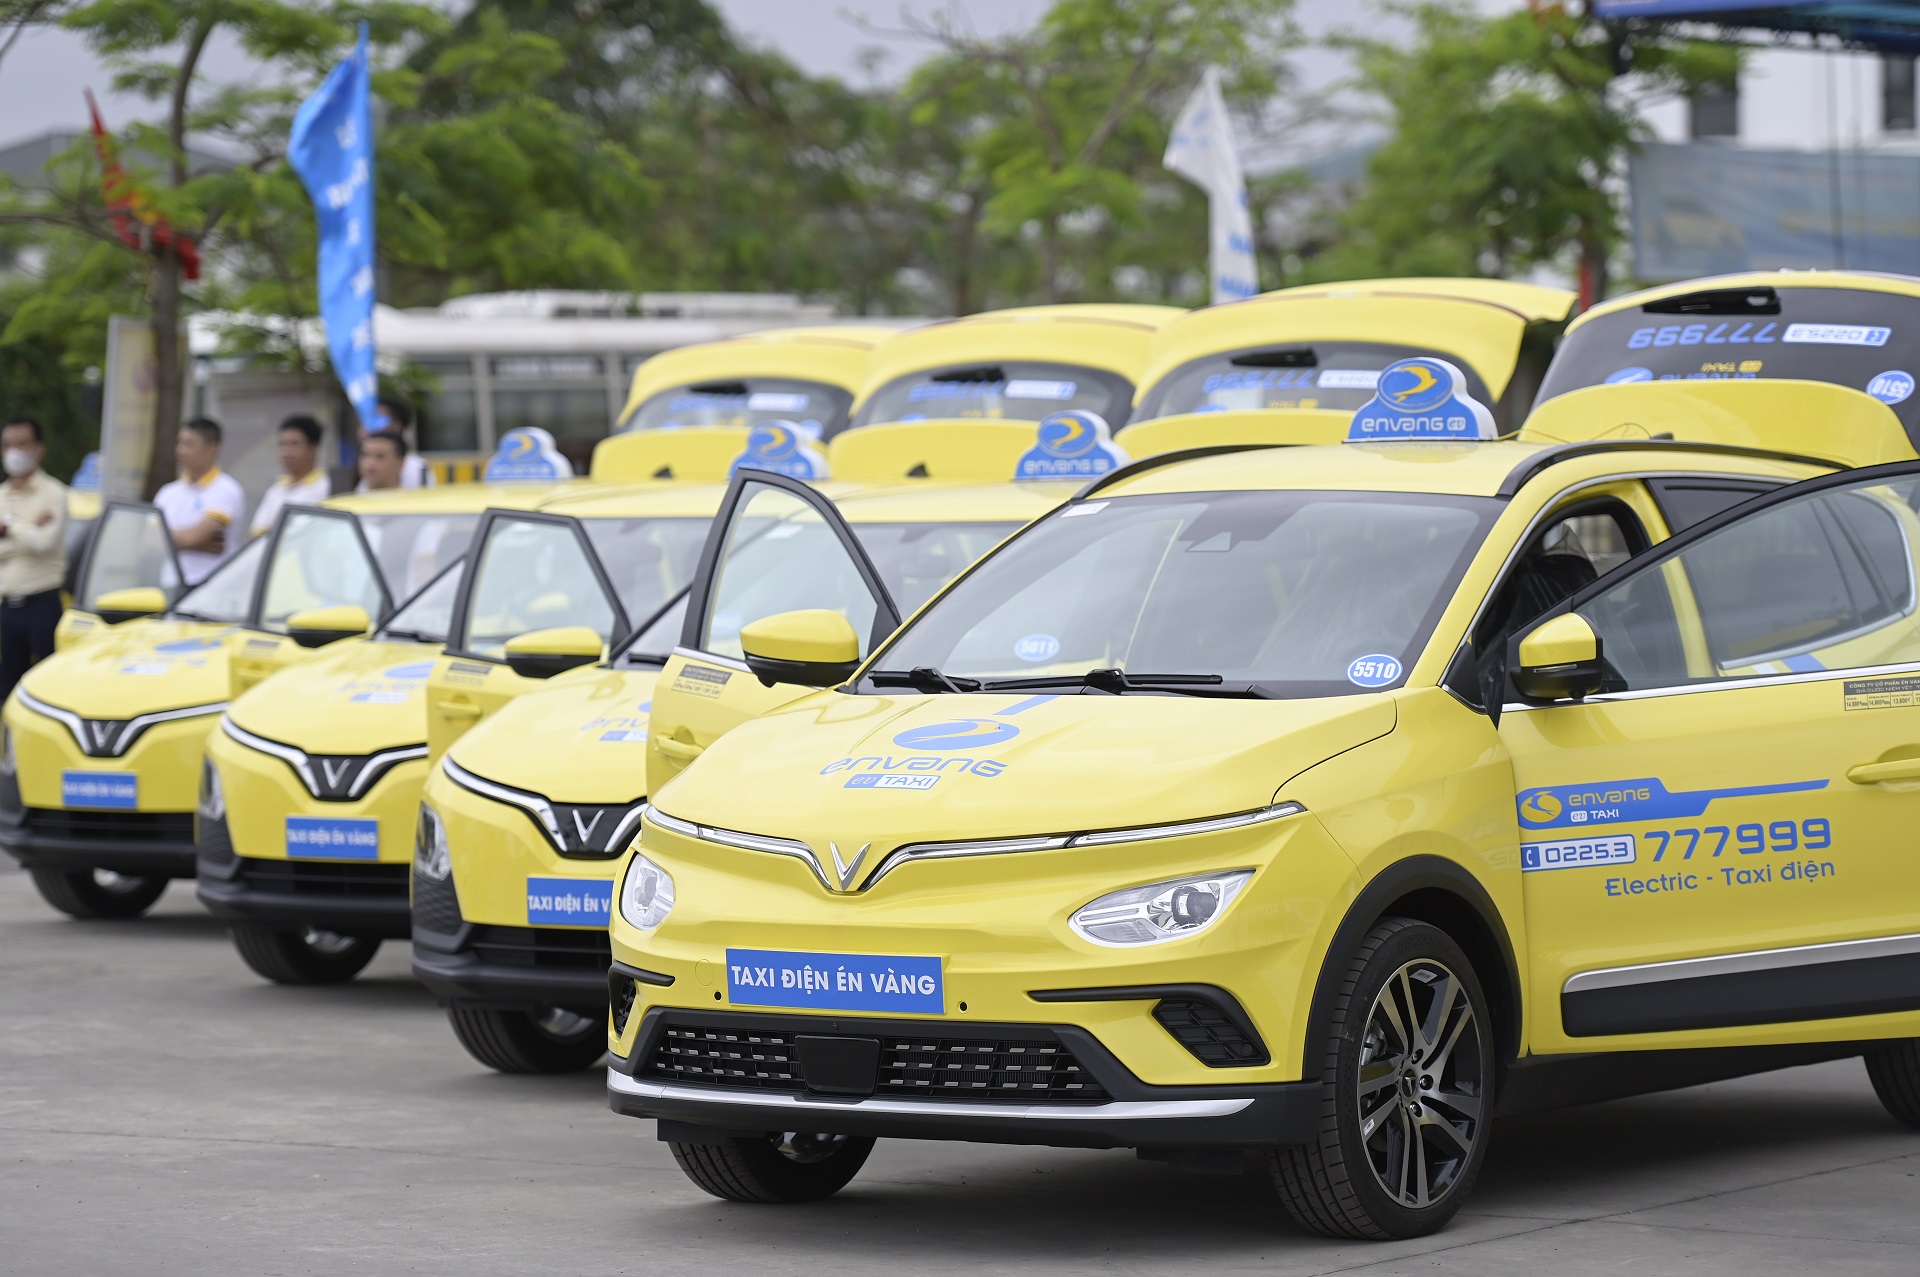 Én Vàng mua và thuê 150 xe ô tô điện VinFast, ra mắt dịch vụ taxi điện đầu tiên tại Hải Phòng en-vang-1.jpeg